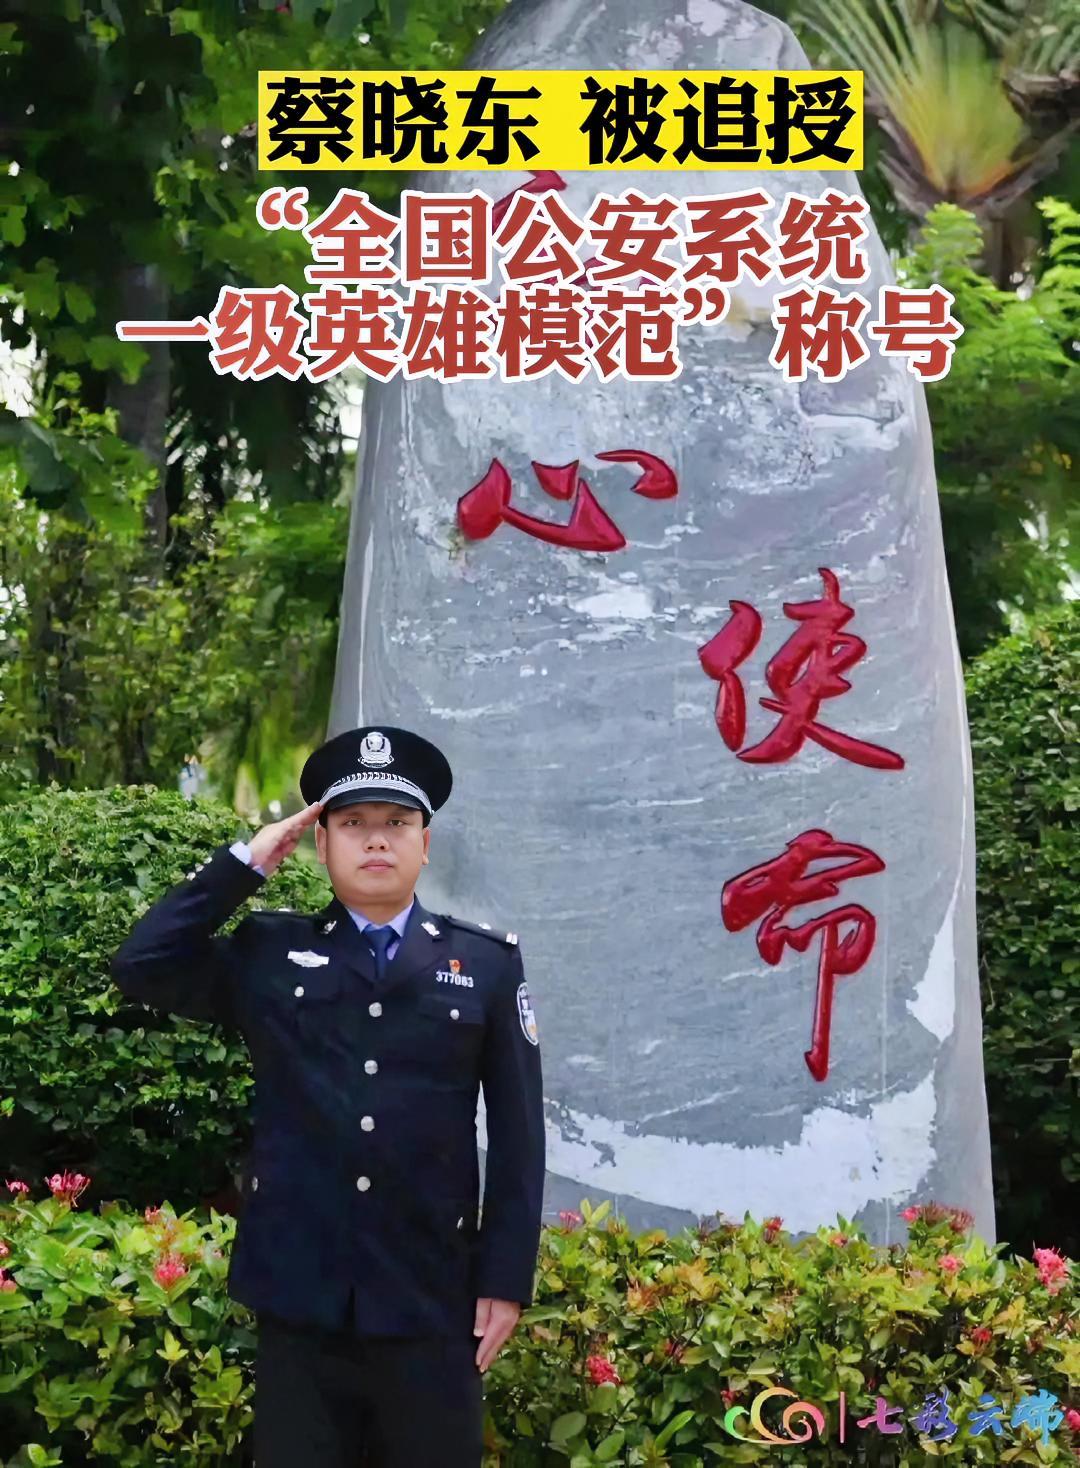 近日,缉毒英雄蔡晓东被追授为全国公安系统一级英雄模范!